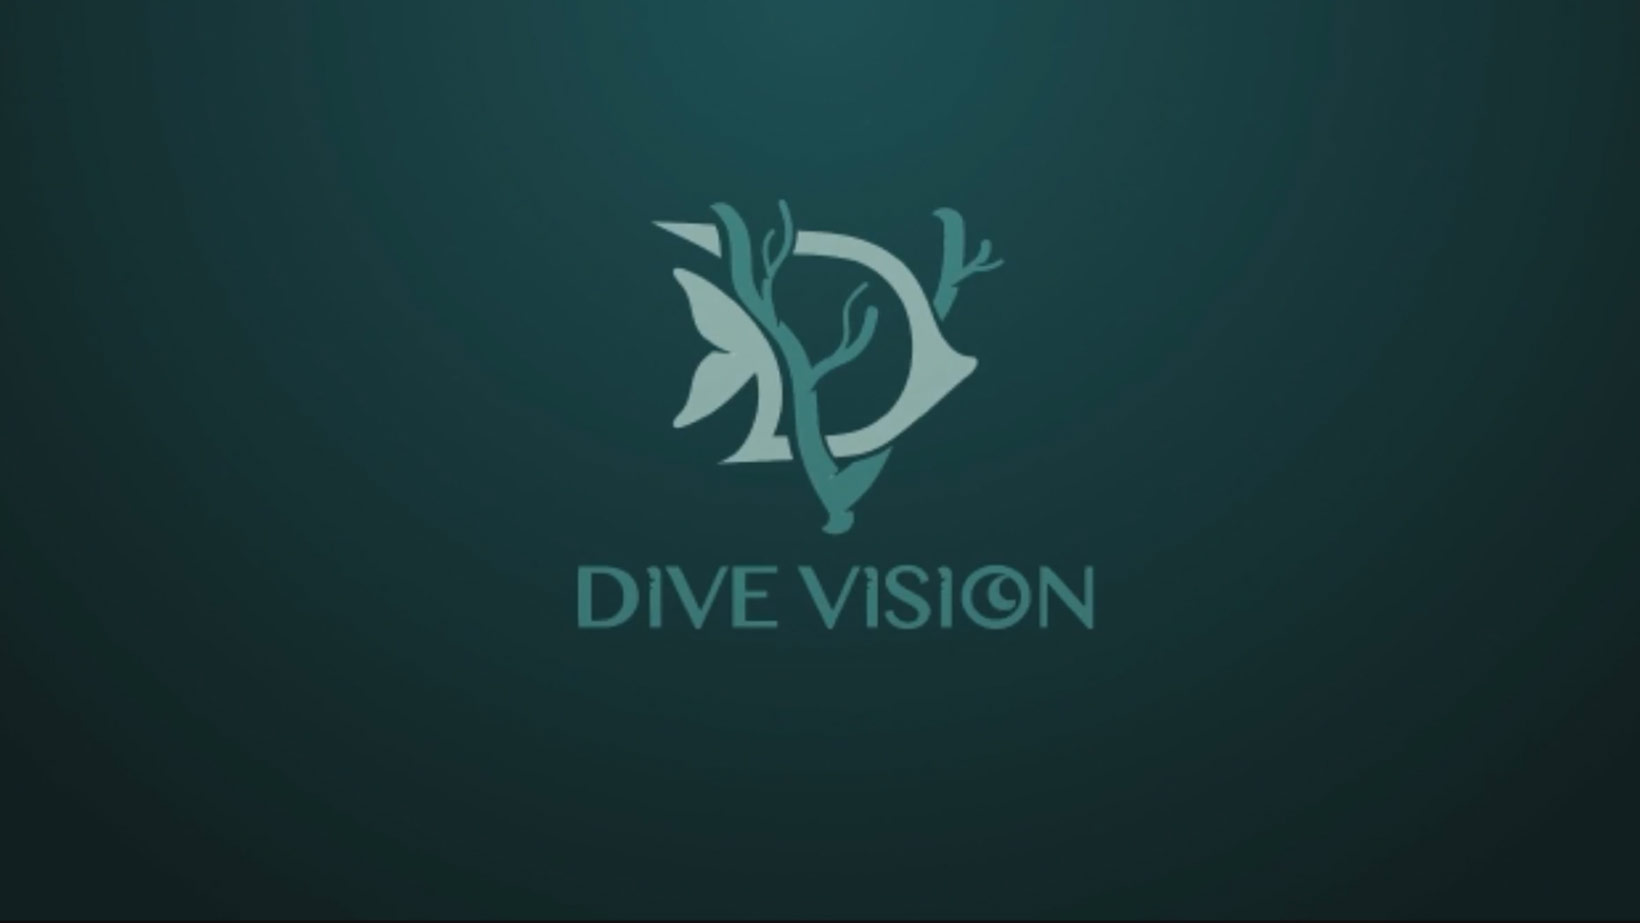 DivVision